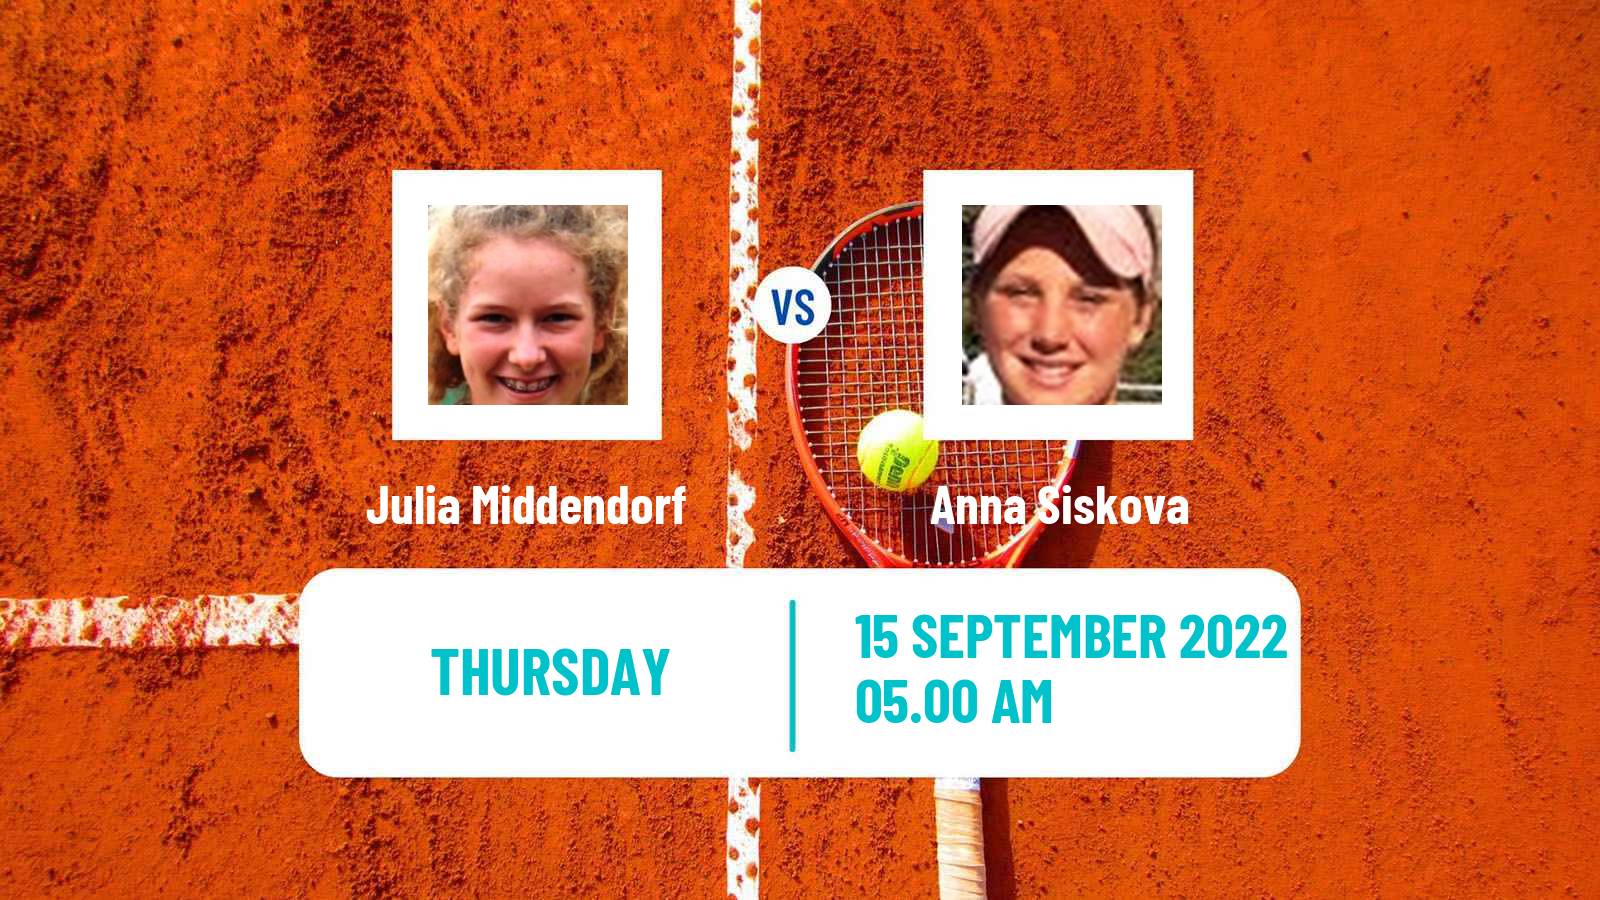 Tennis ITF Tournaments Julia Middendorf - Anna Siskova